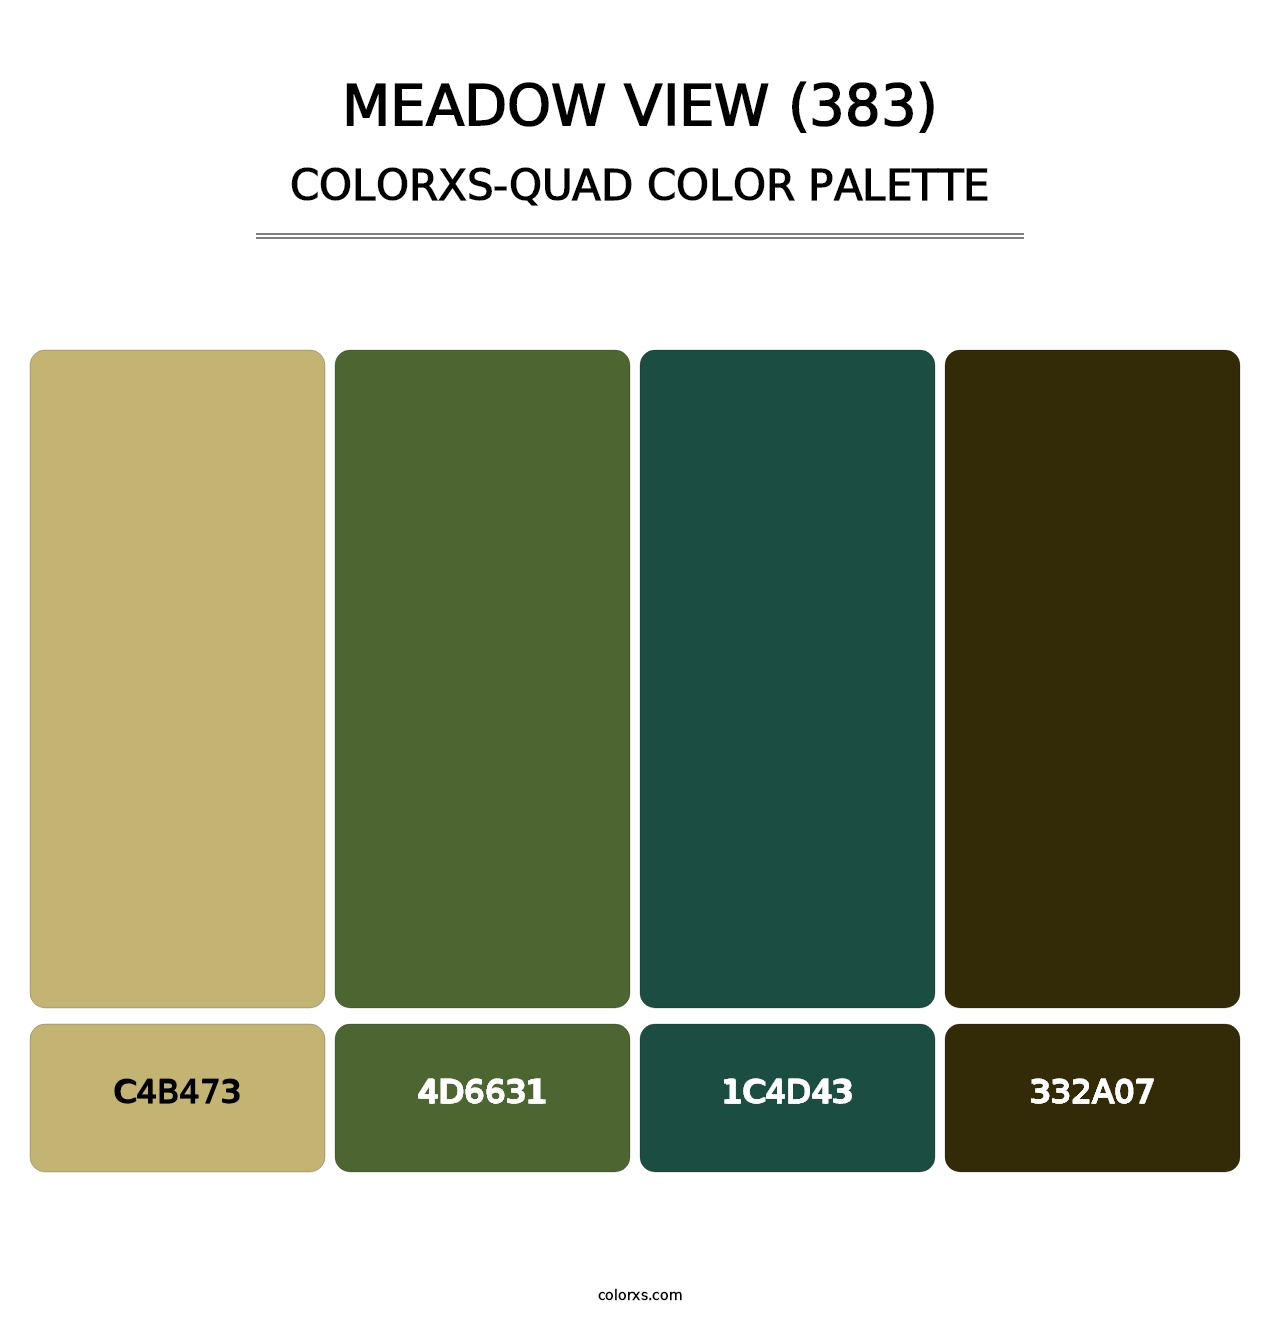 Meadow View (383) - Colorxs Quad Palette